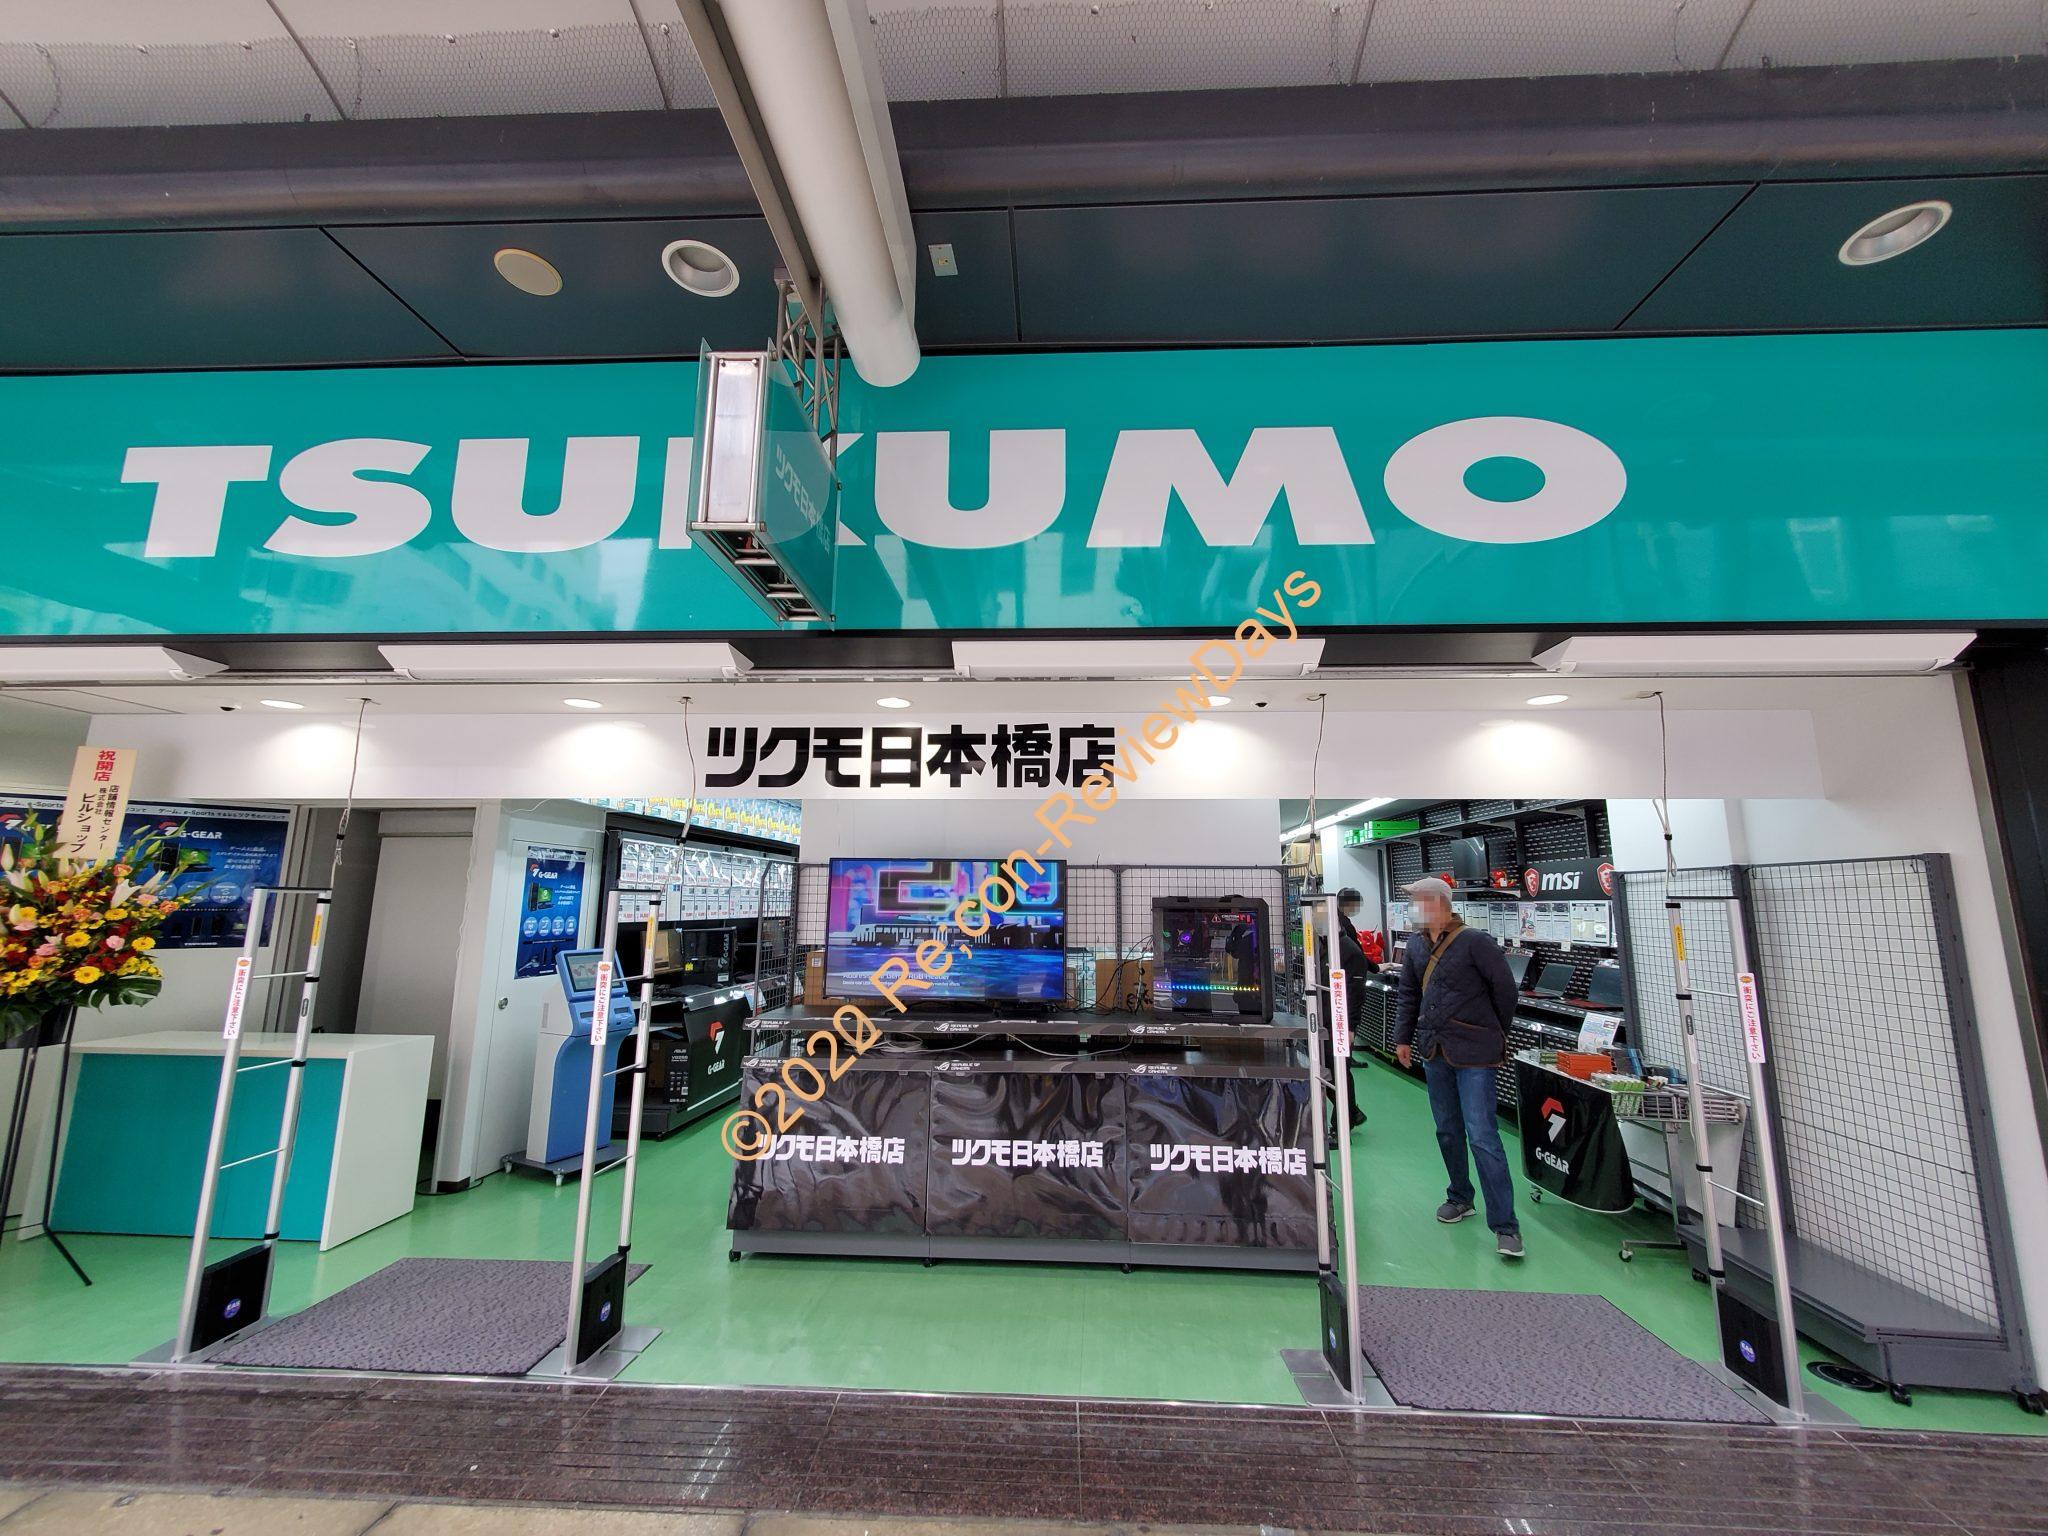 2020年2月14日にプレオープンした「ツクモ日本橋店」に行ってきました #TSUKUMO #ツクモ #pombashi #ツクモ日本橋